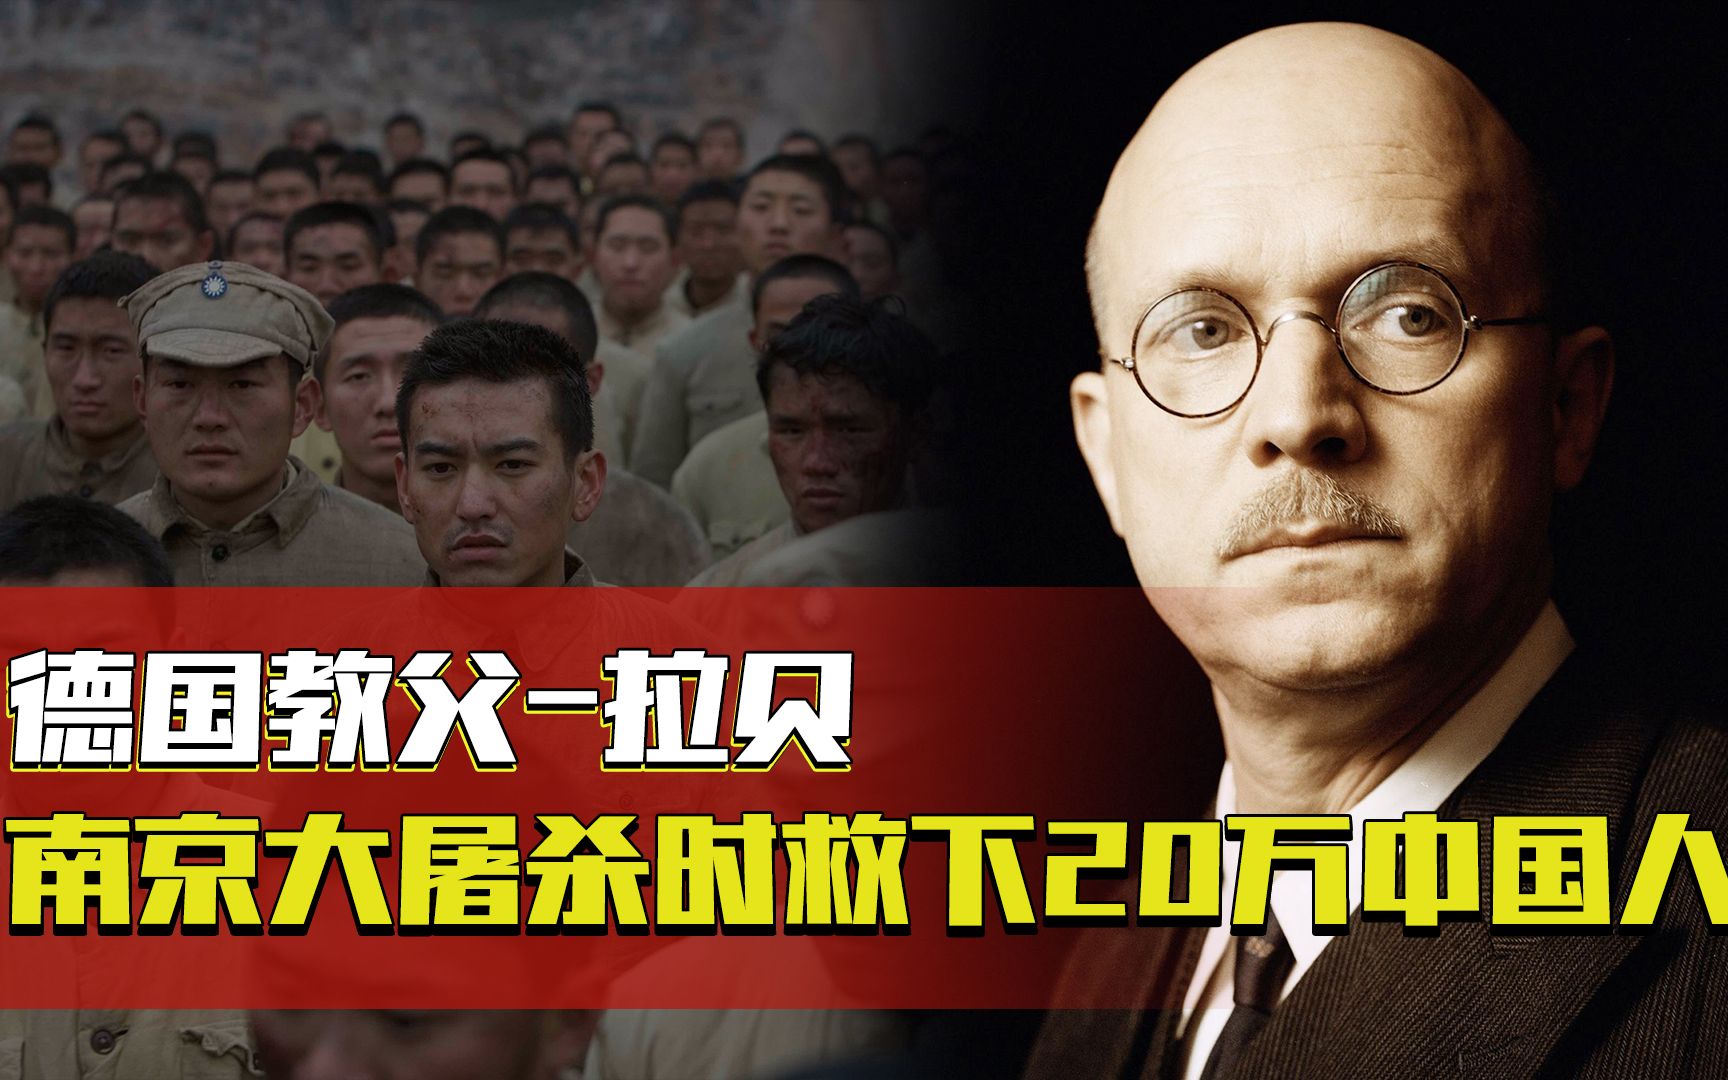 德国教父拉贝:南京大屠杀时拯救20万中国人,如今孙子向中国求援